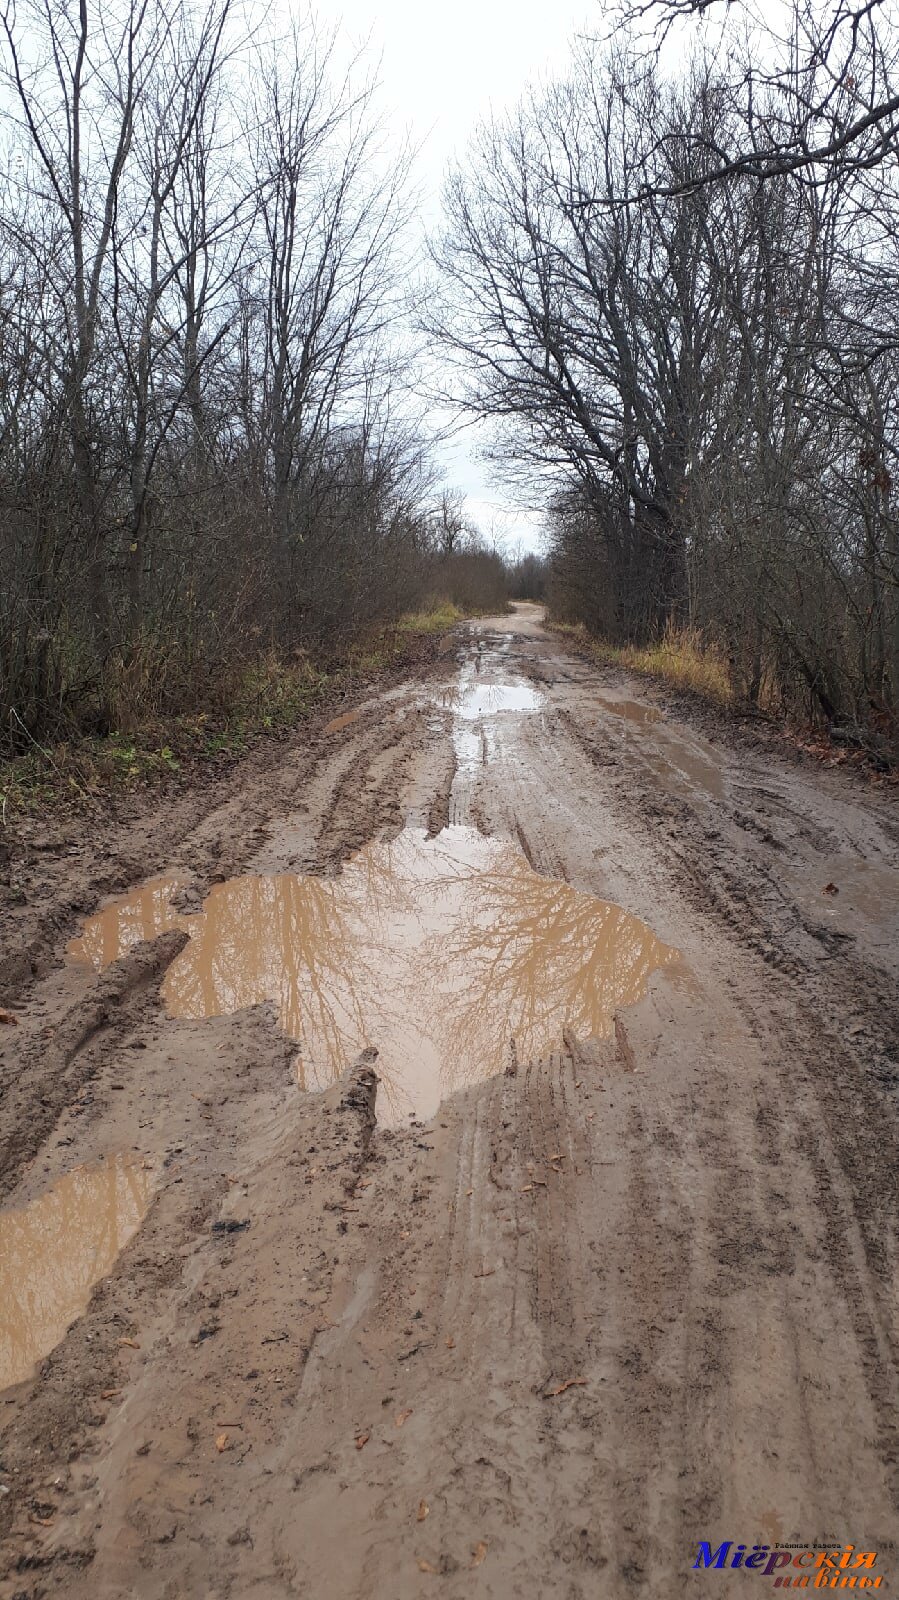 Дорога  по маршруту Малая Ковалевщина - Суховержье все же требует ремонта